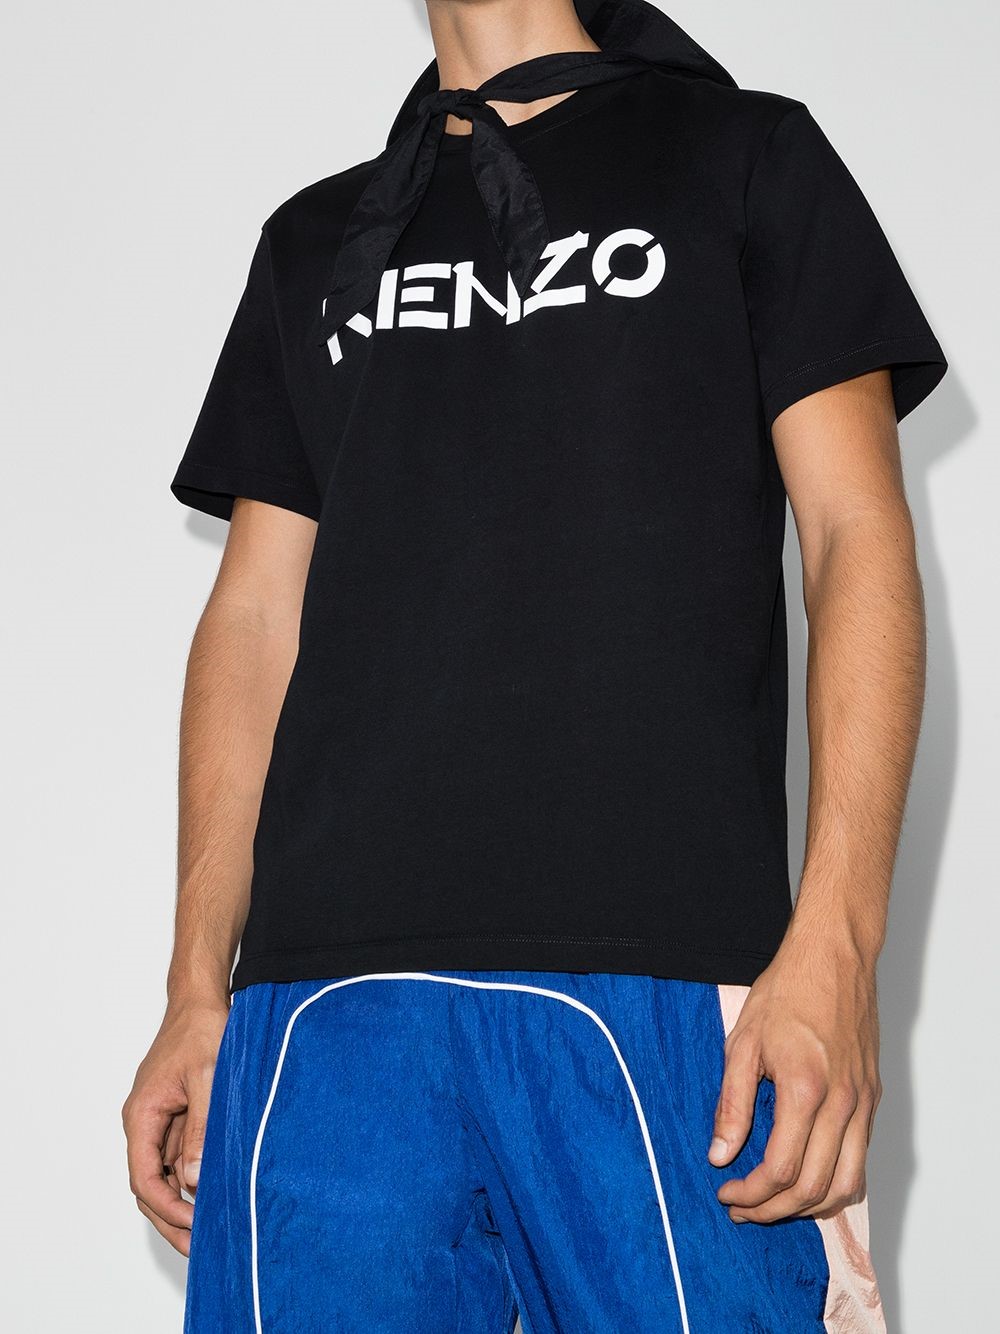 Kenzo Logo T Shirt Online, 53% OFF | campingcanyelles.com